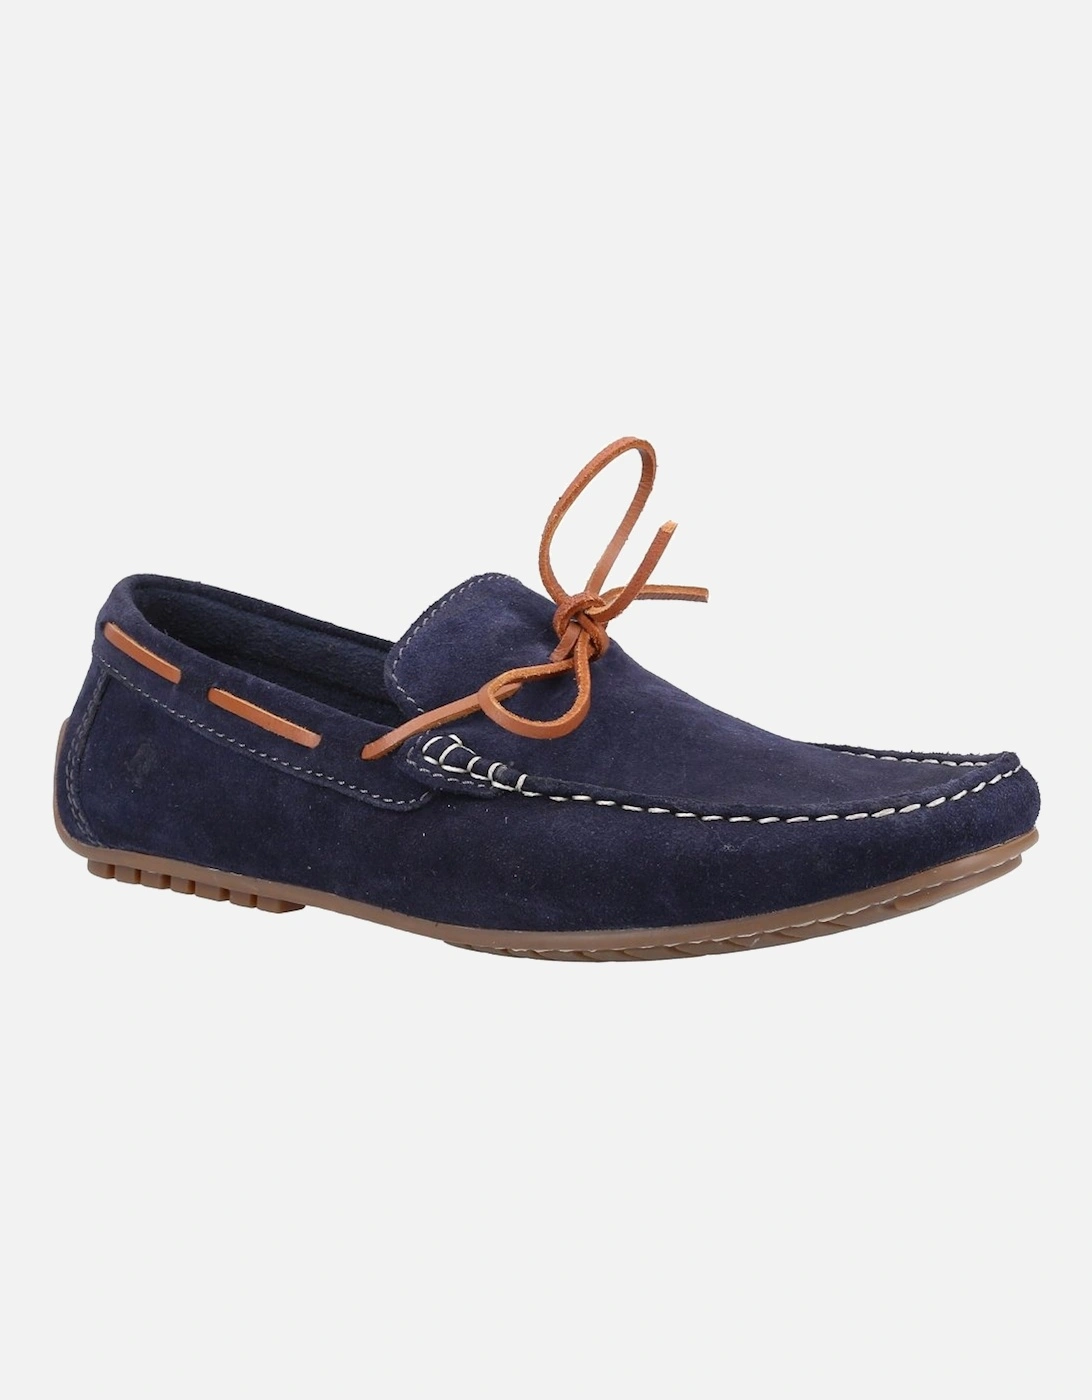 Reuben Mens Boat Shoes, 5 of 4